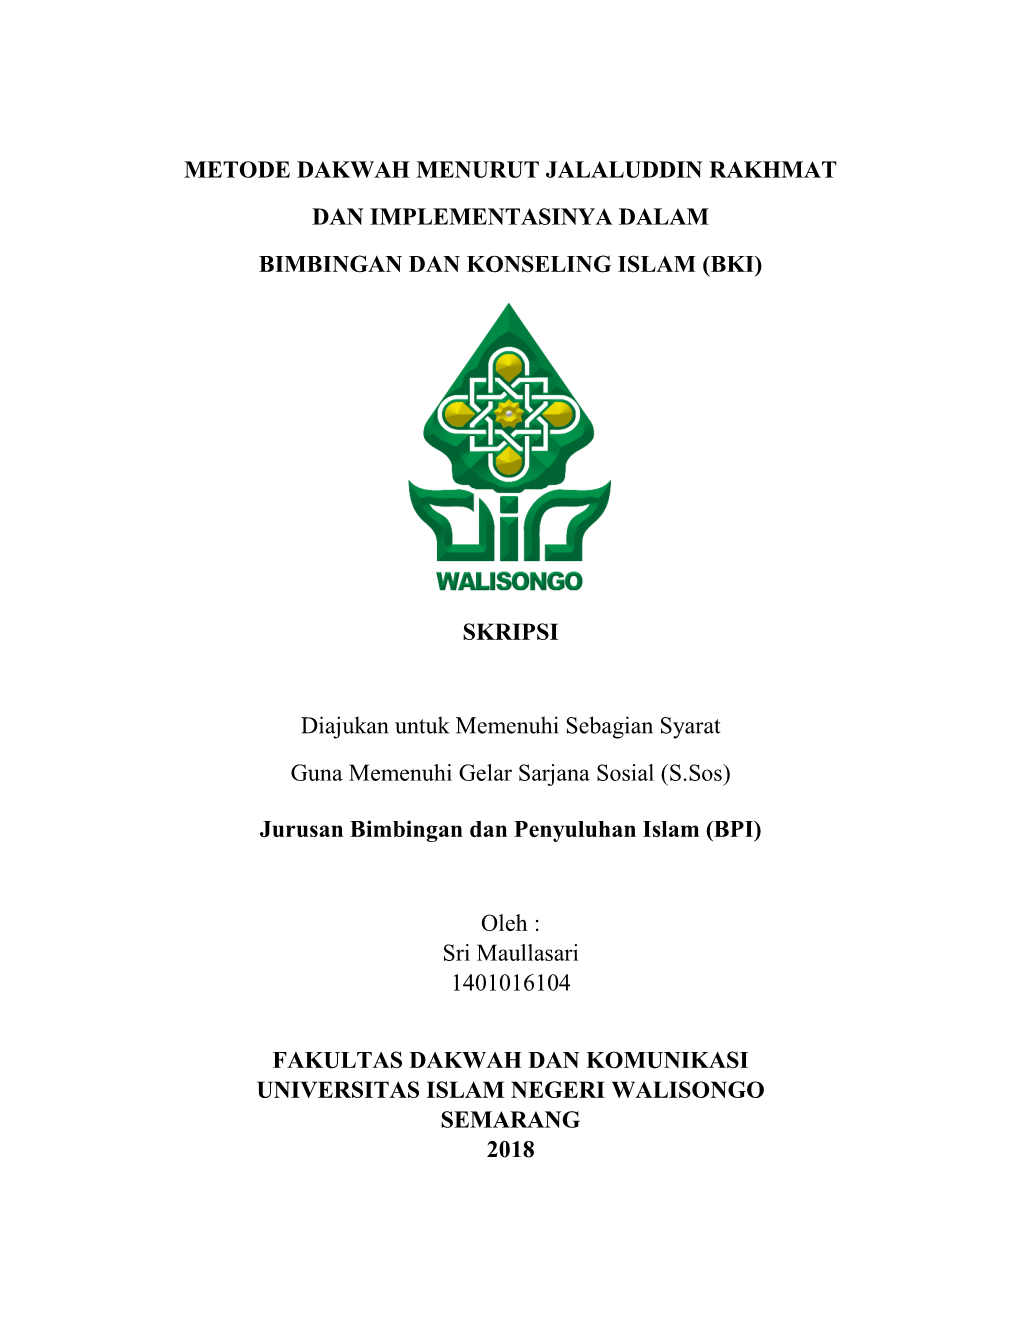 Metode Dakwah Menurut Jalaluddin Rakhmat Dan Implementasinya Dalam Bimbingan Dan Konseling Islam (Bki)